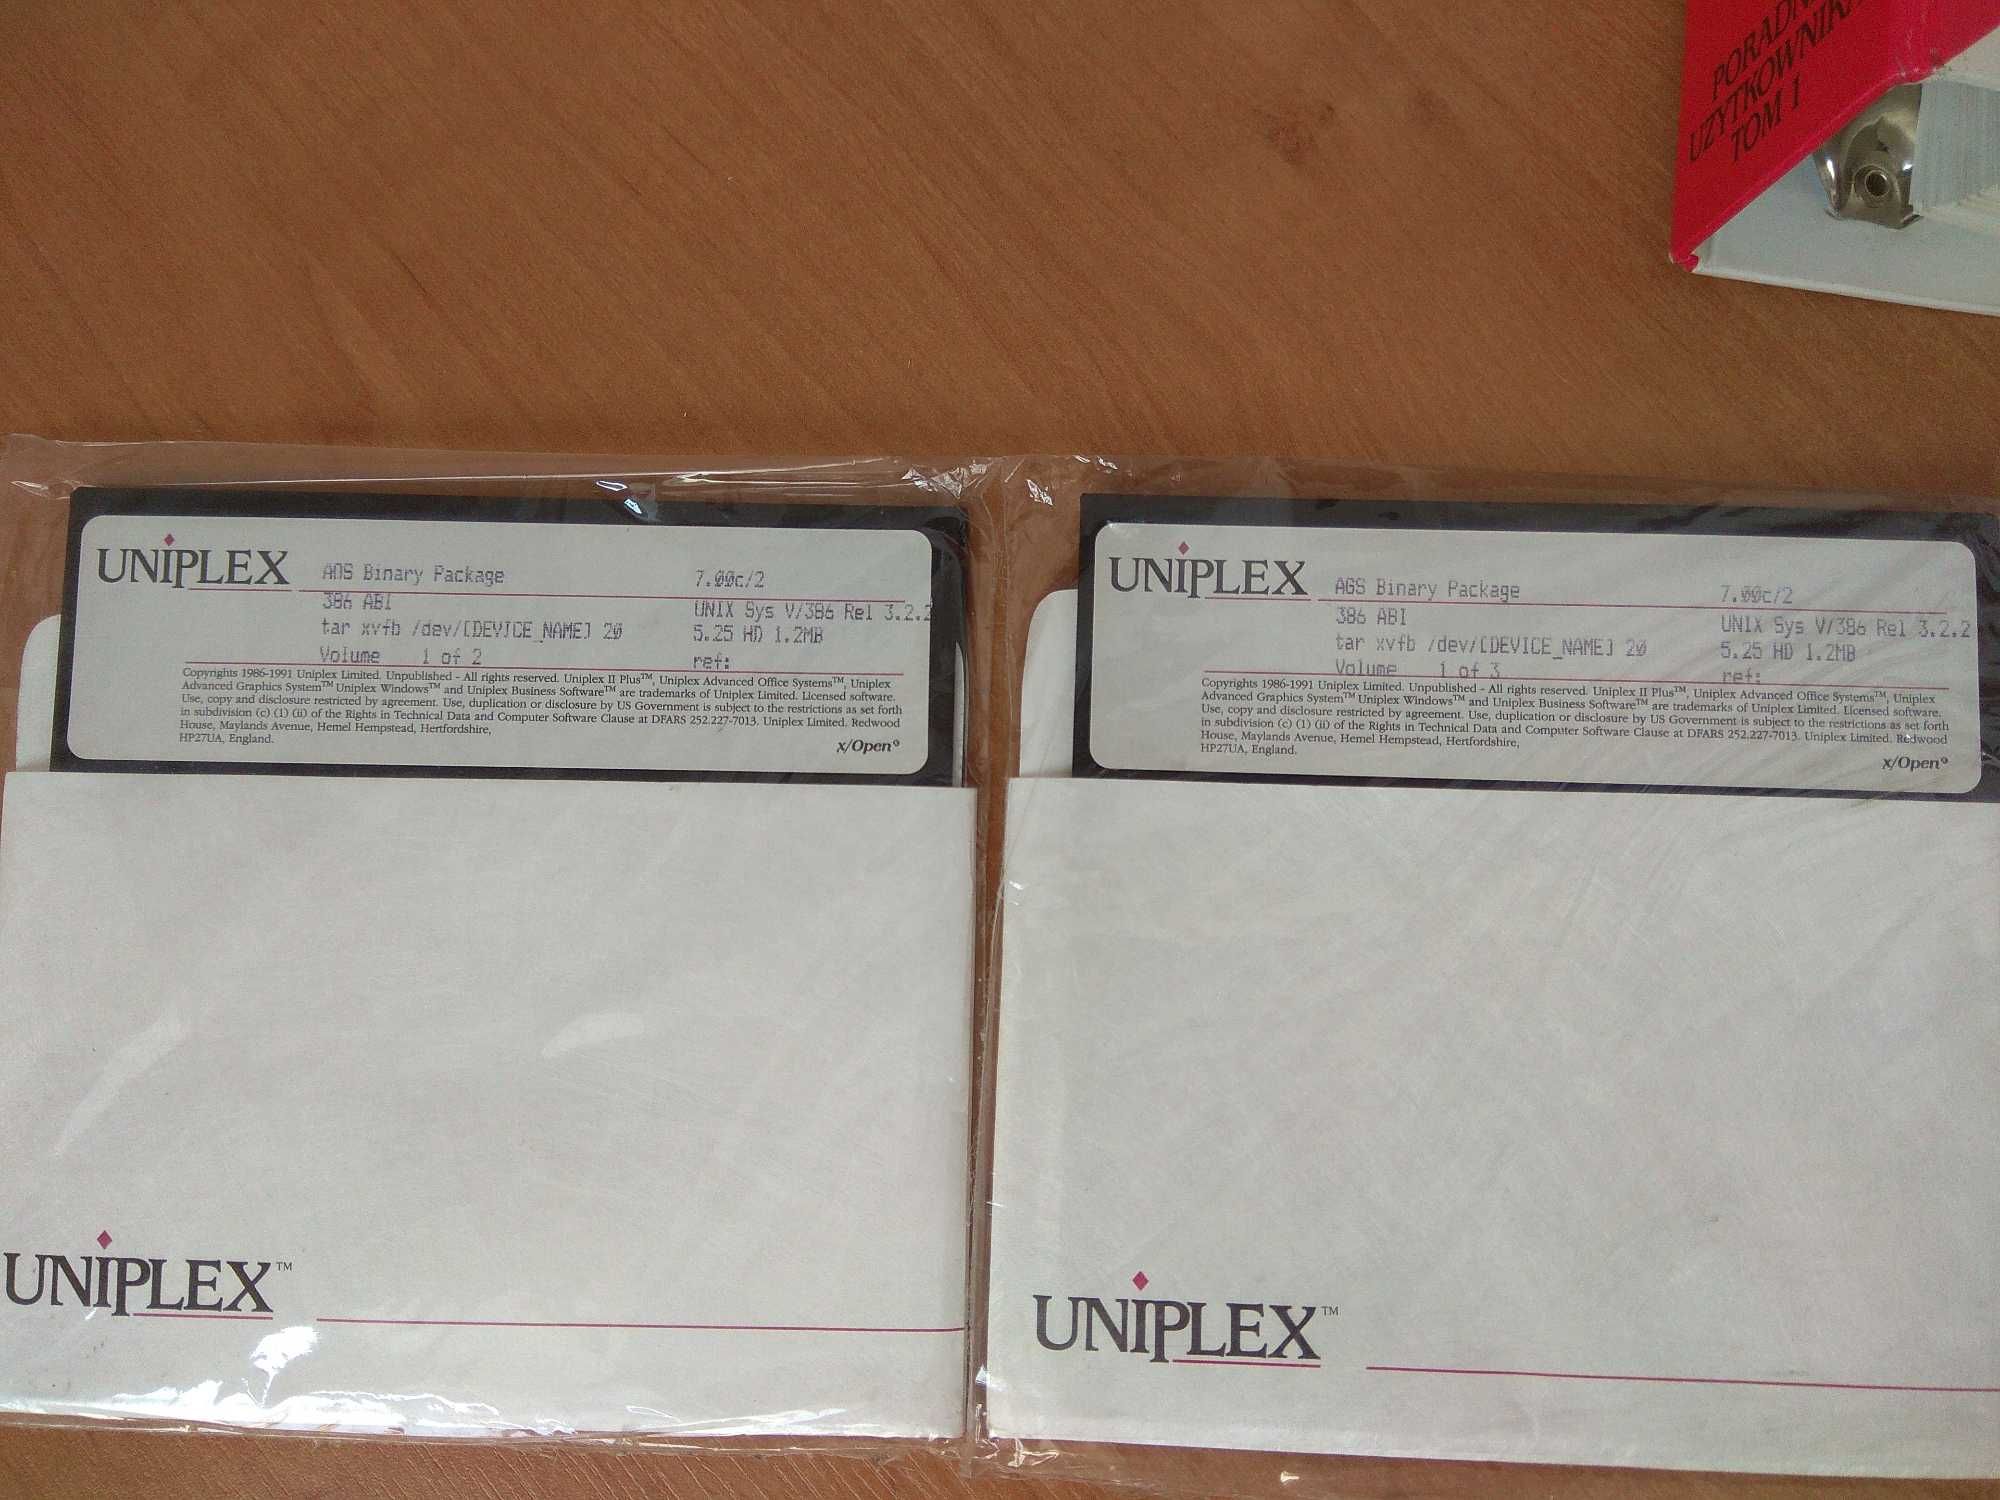 UNIPLEX II Plus - pakiet biurowy dla Unixa (dyskietki 5,25", PC 386)